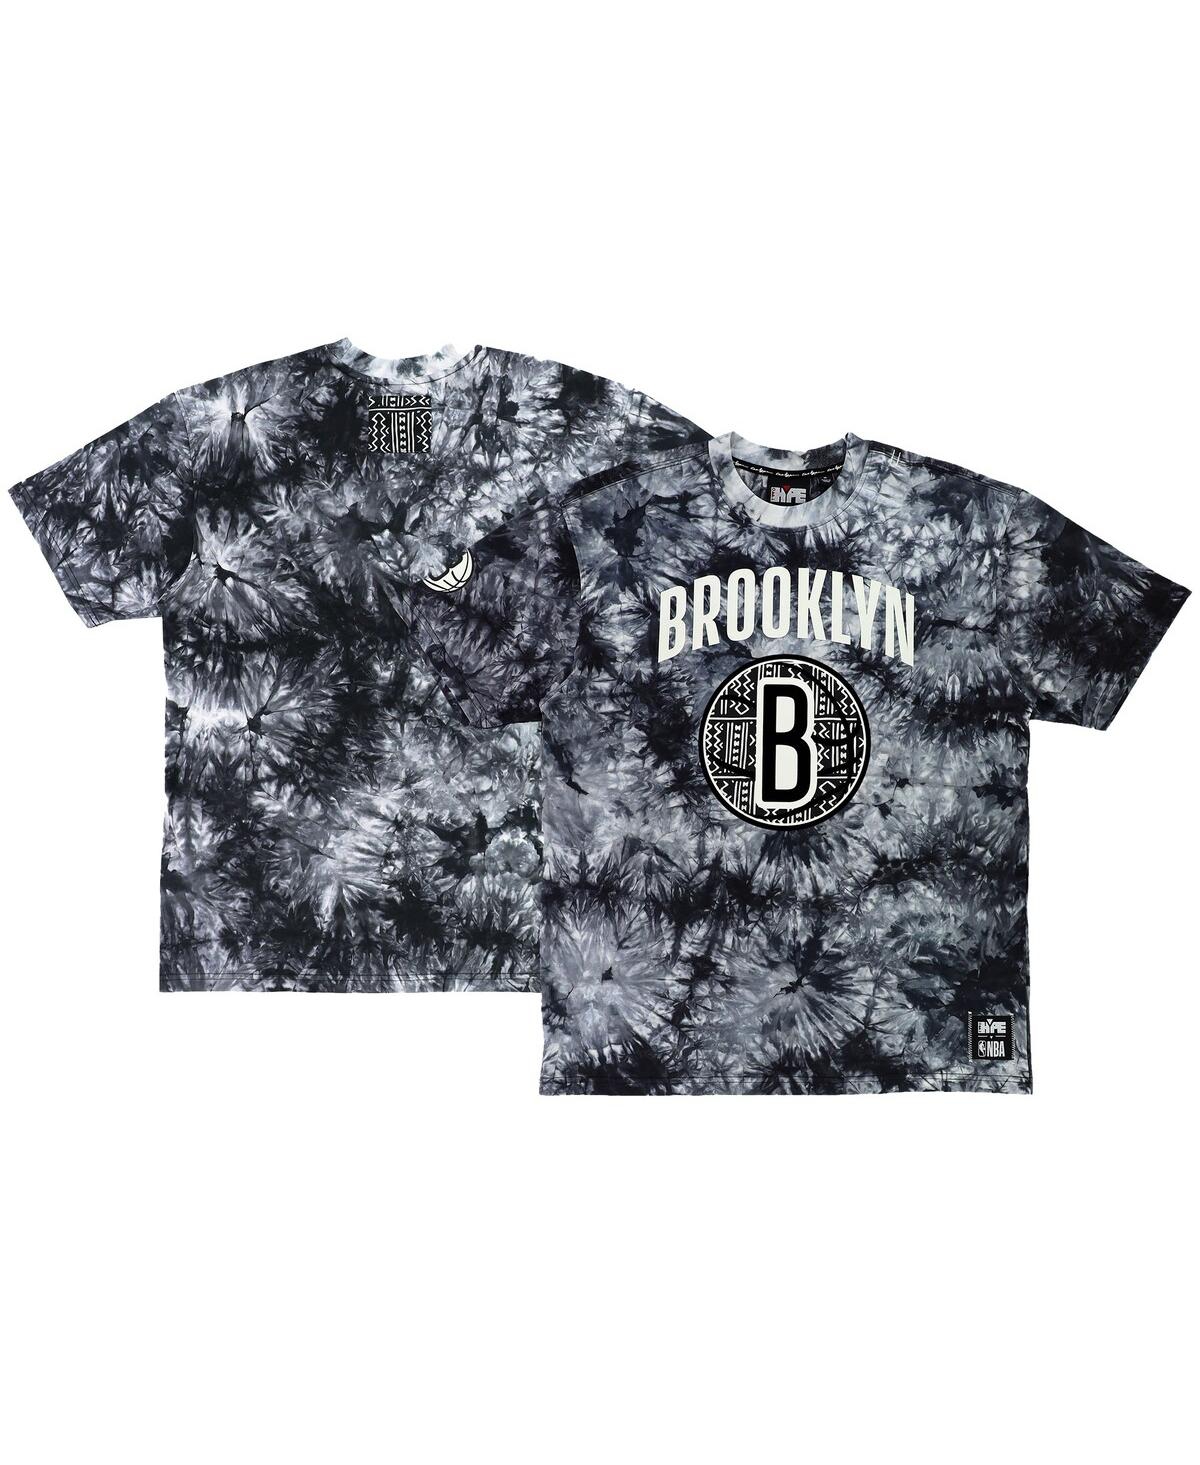 Men's and Women's Nba x Two Hype Black Brooklyn Nets Culture & Hoops Tie-Dye T-shirt - Black